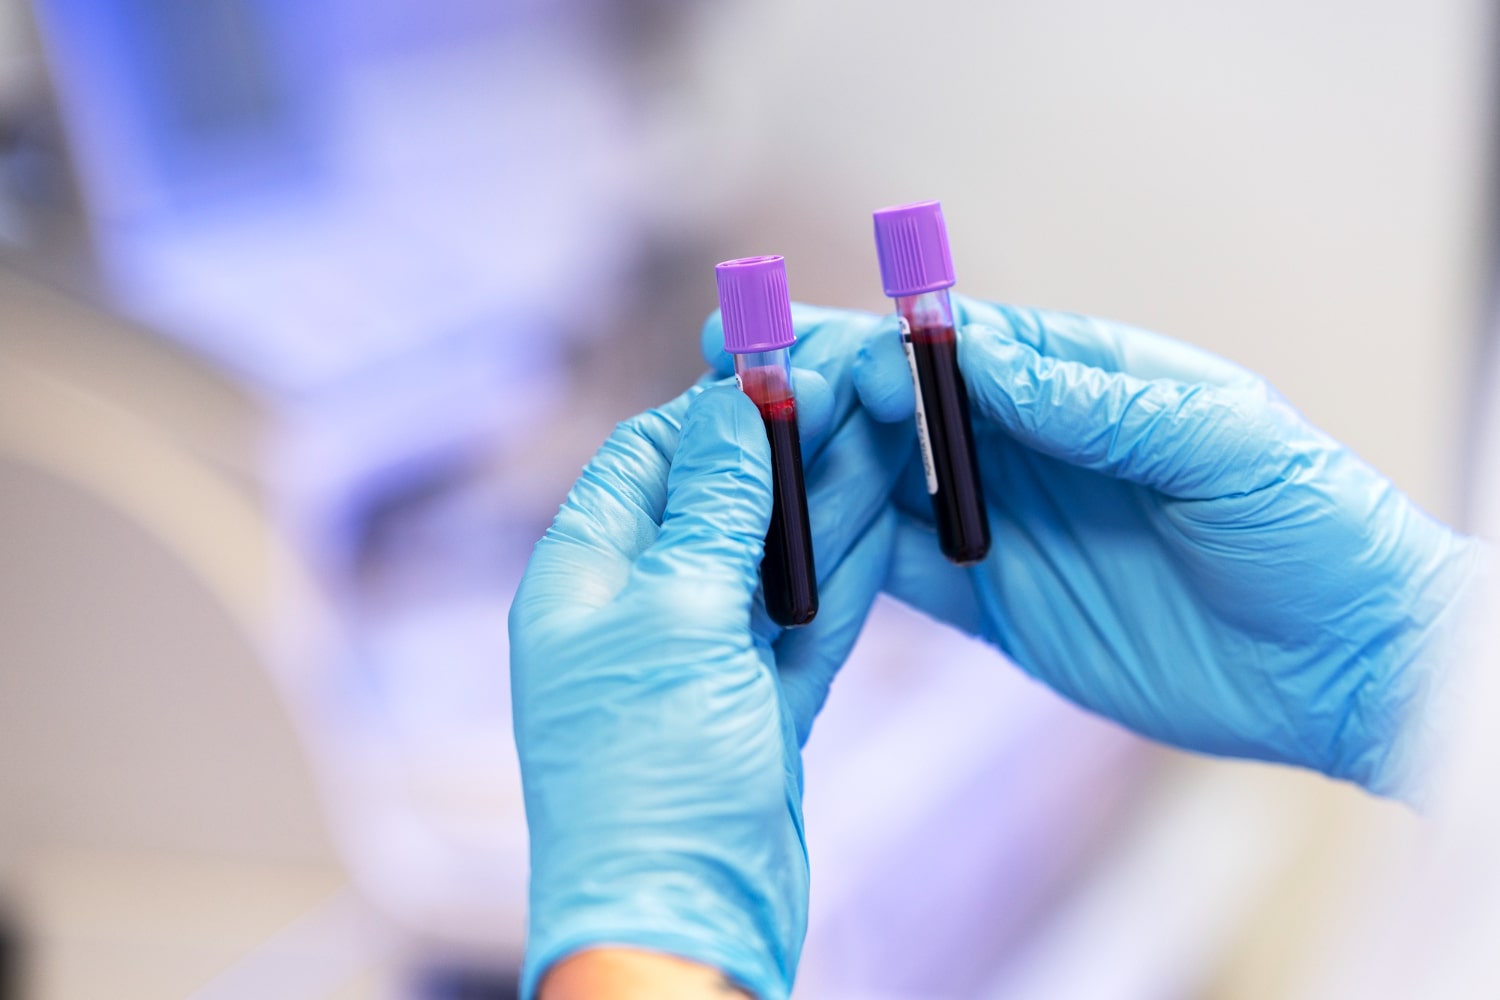 Blood test could help diagnose Parkinson's